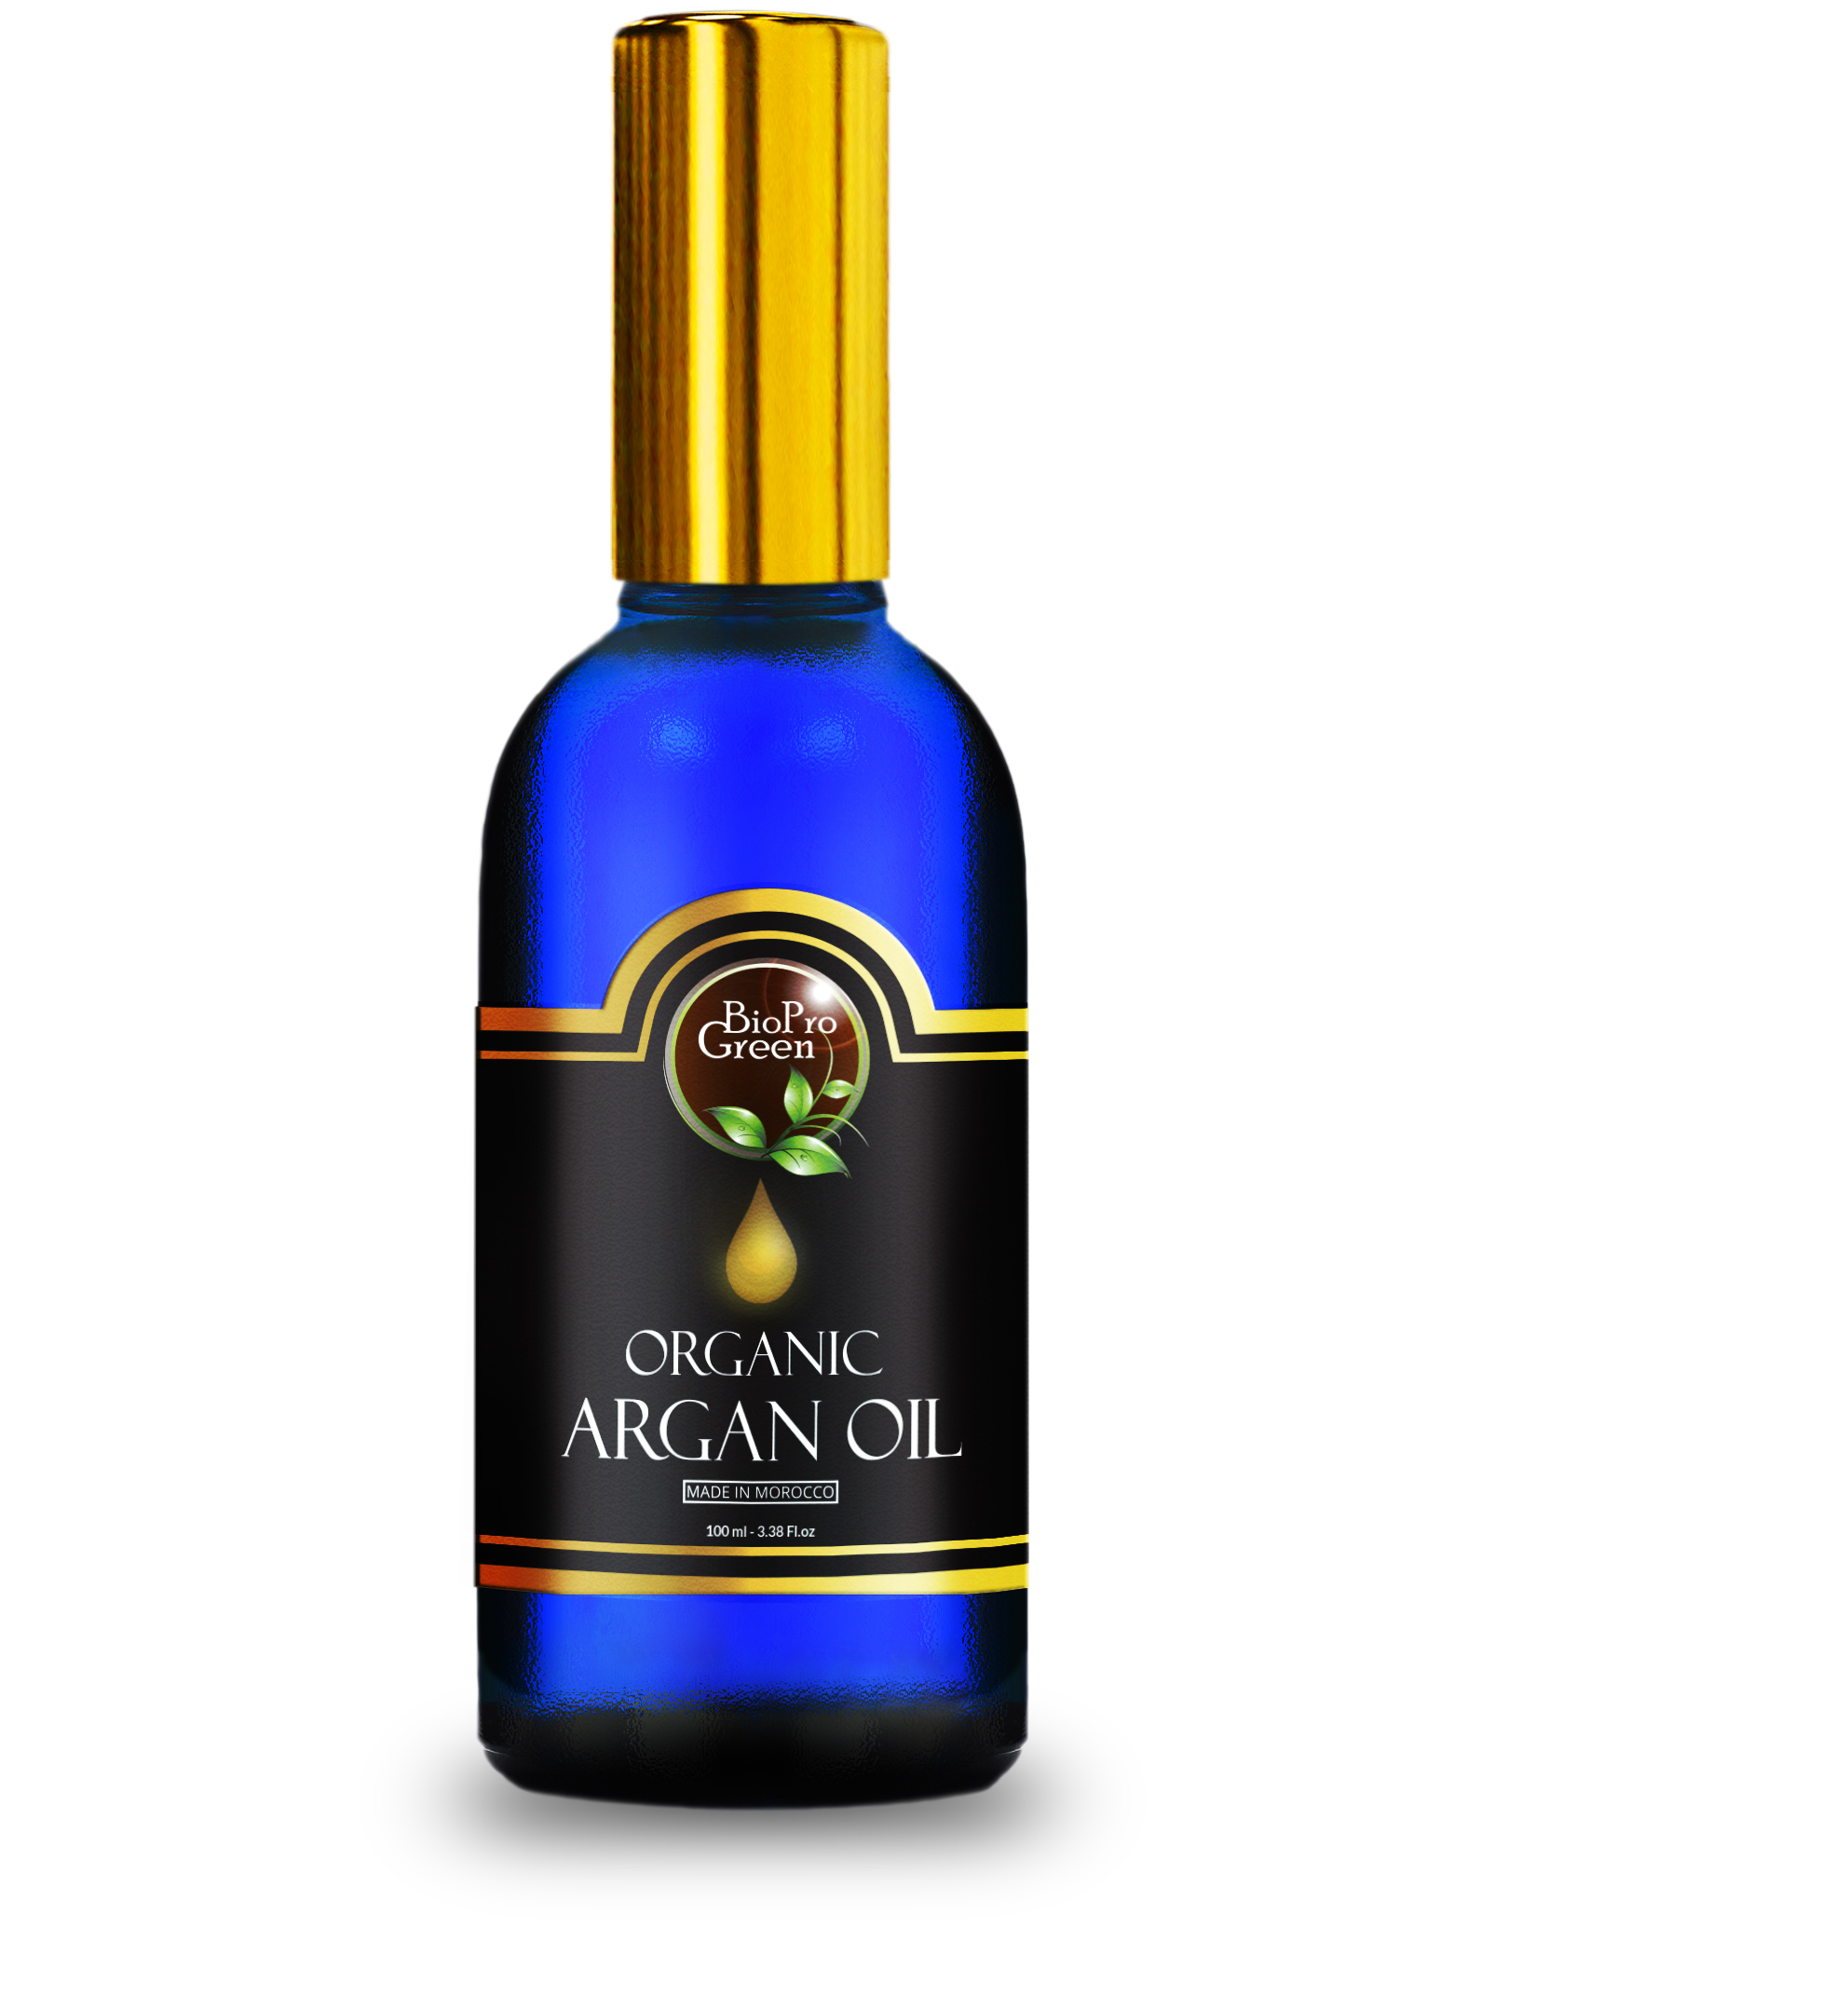       What is Argan oil?